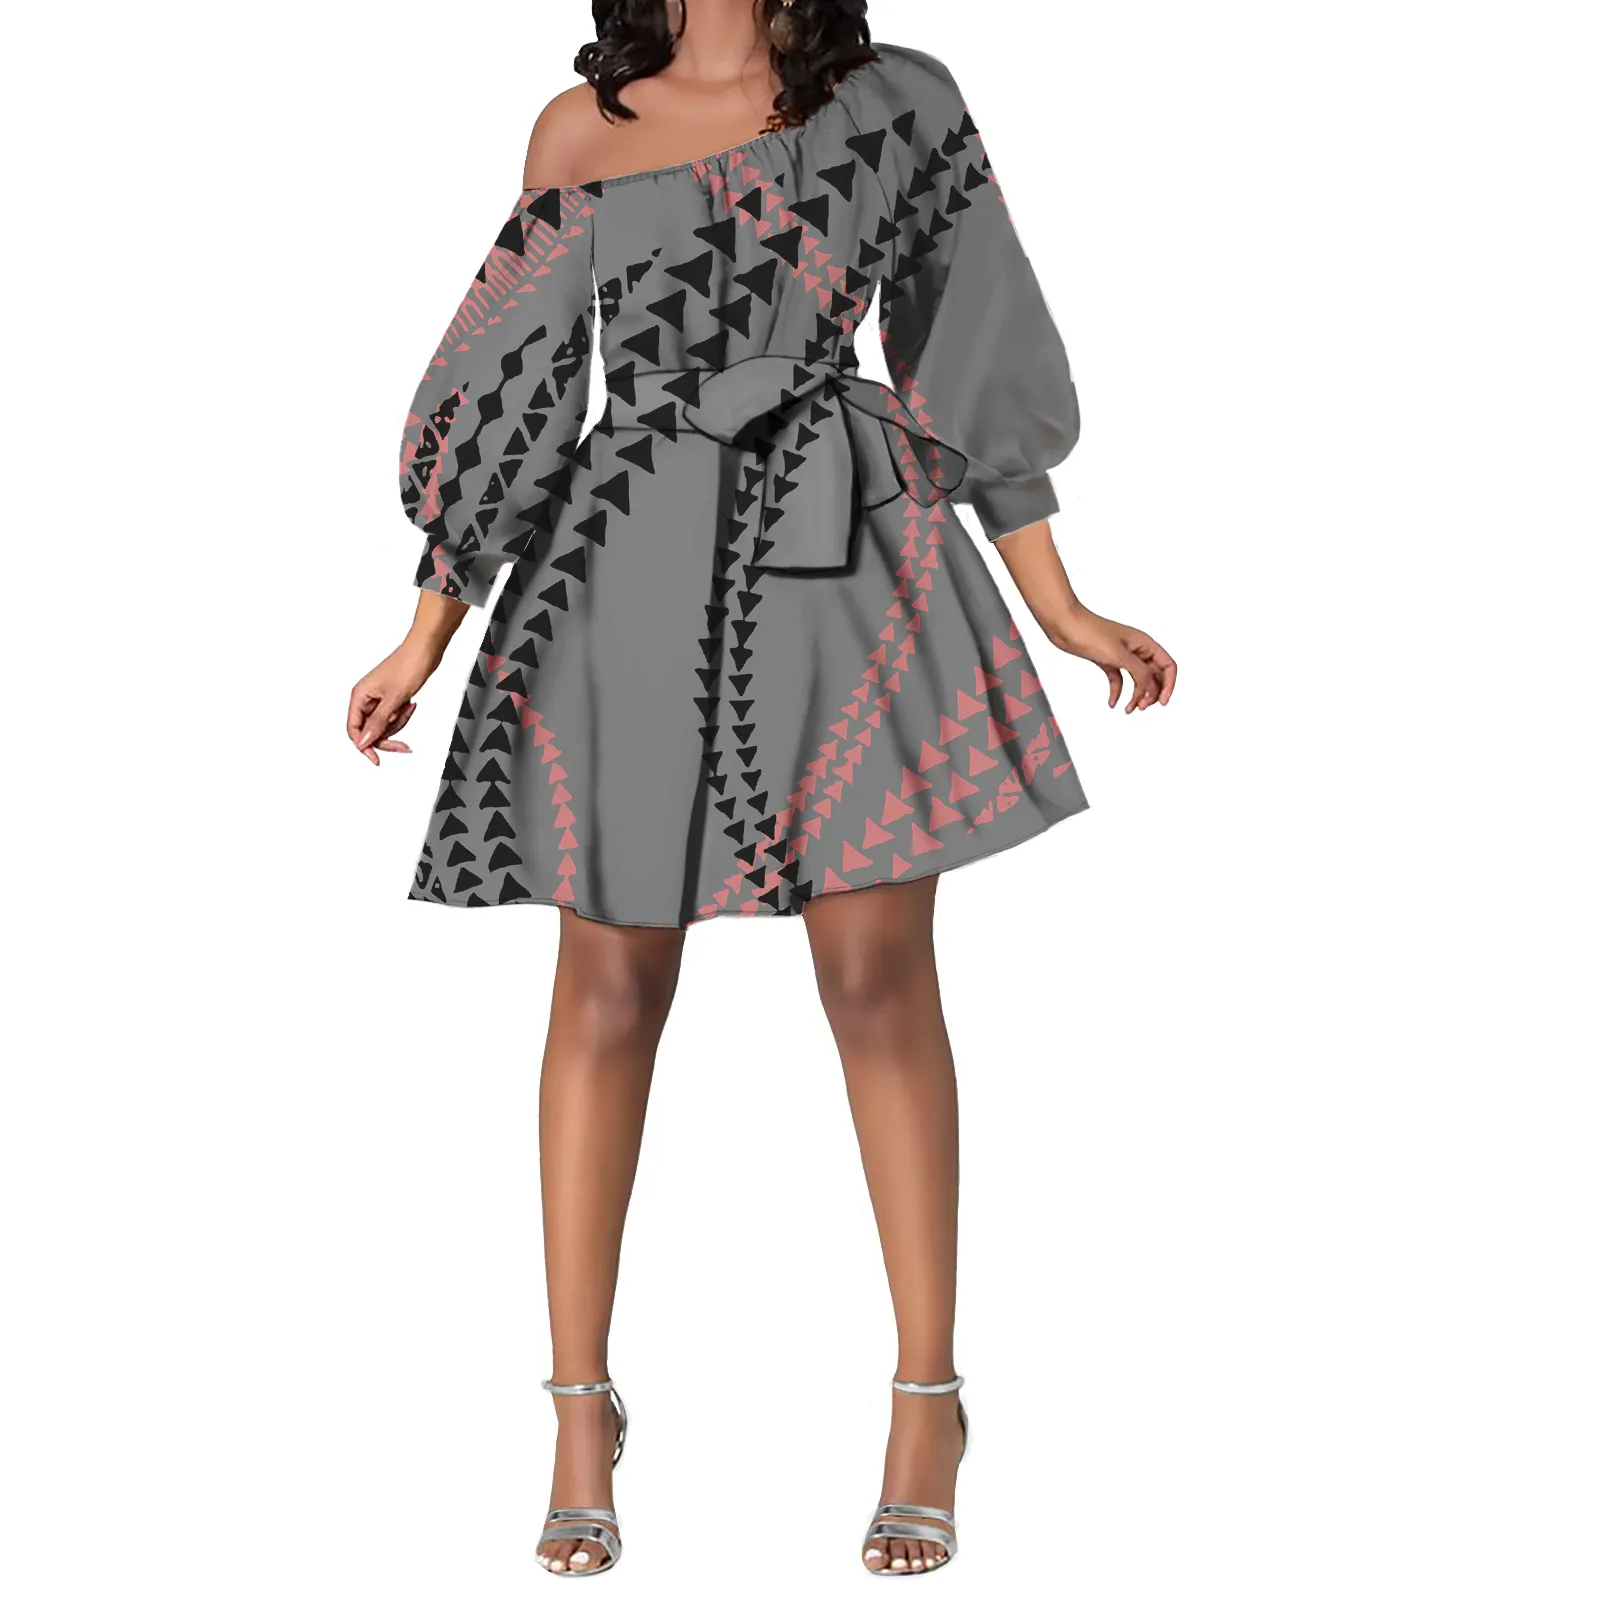 Высокое качество дешевой цене, Самоанская в этническом стиле пользовательский свитер платье с открытыми плечами мини-платья трапециевидной формы с поясом для детей